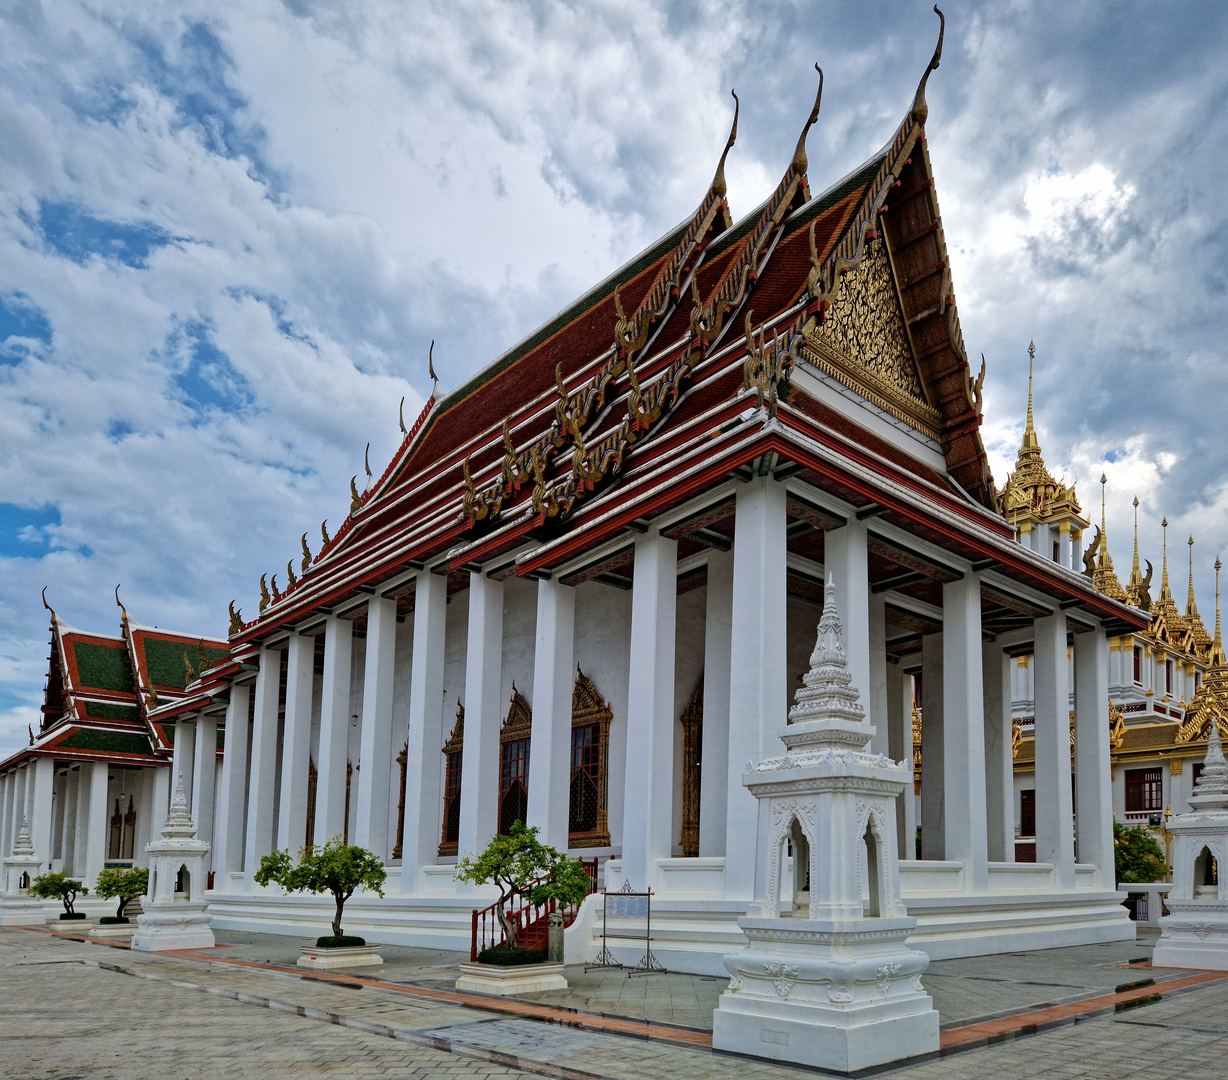 Phra Nakhon - Wat Ratchanatdaram Worawihan (Loha Prasat)